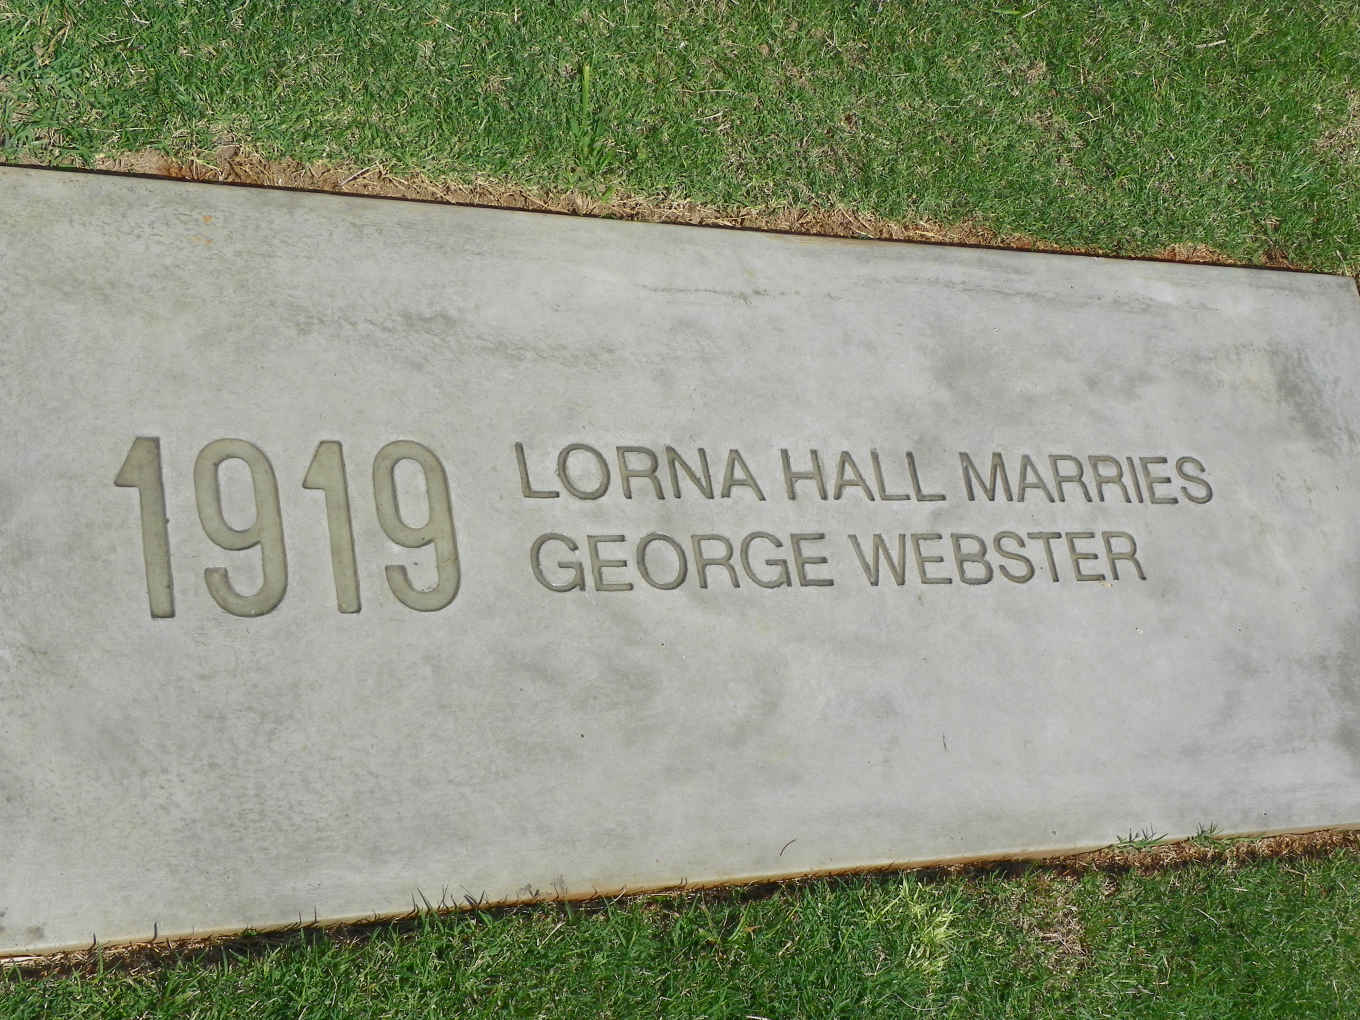 09. Lorna HALL marries George WEBSTER 1919